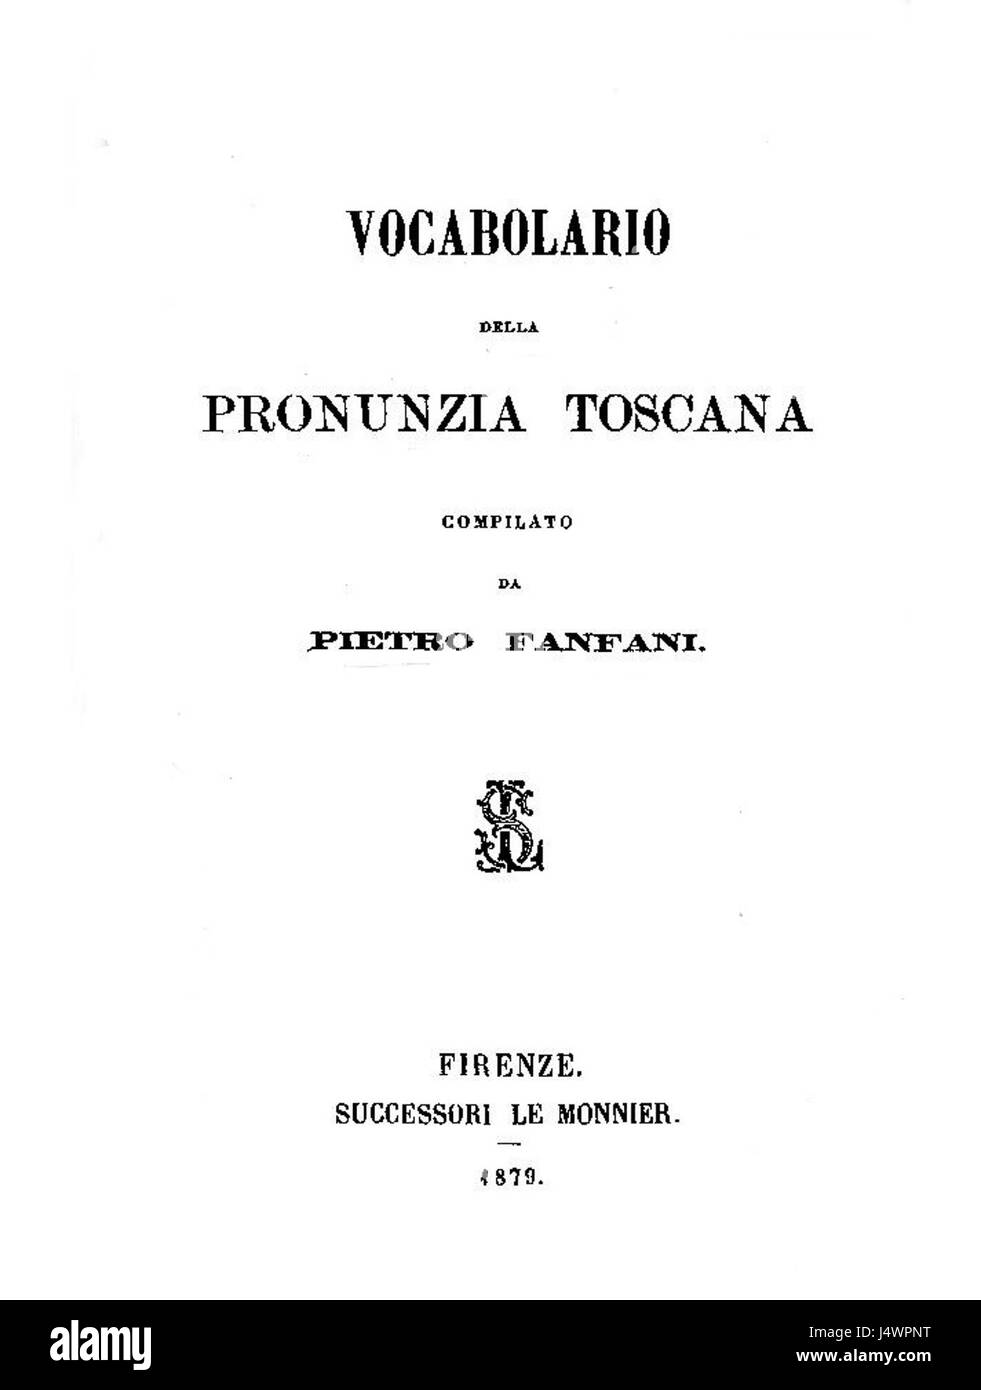 Vocabolario della pronunzia toscana 1879 Foto Stock